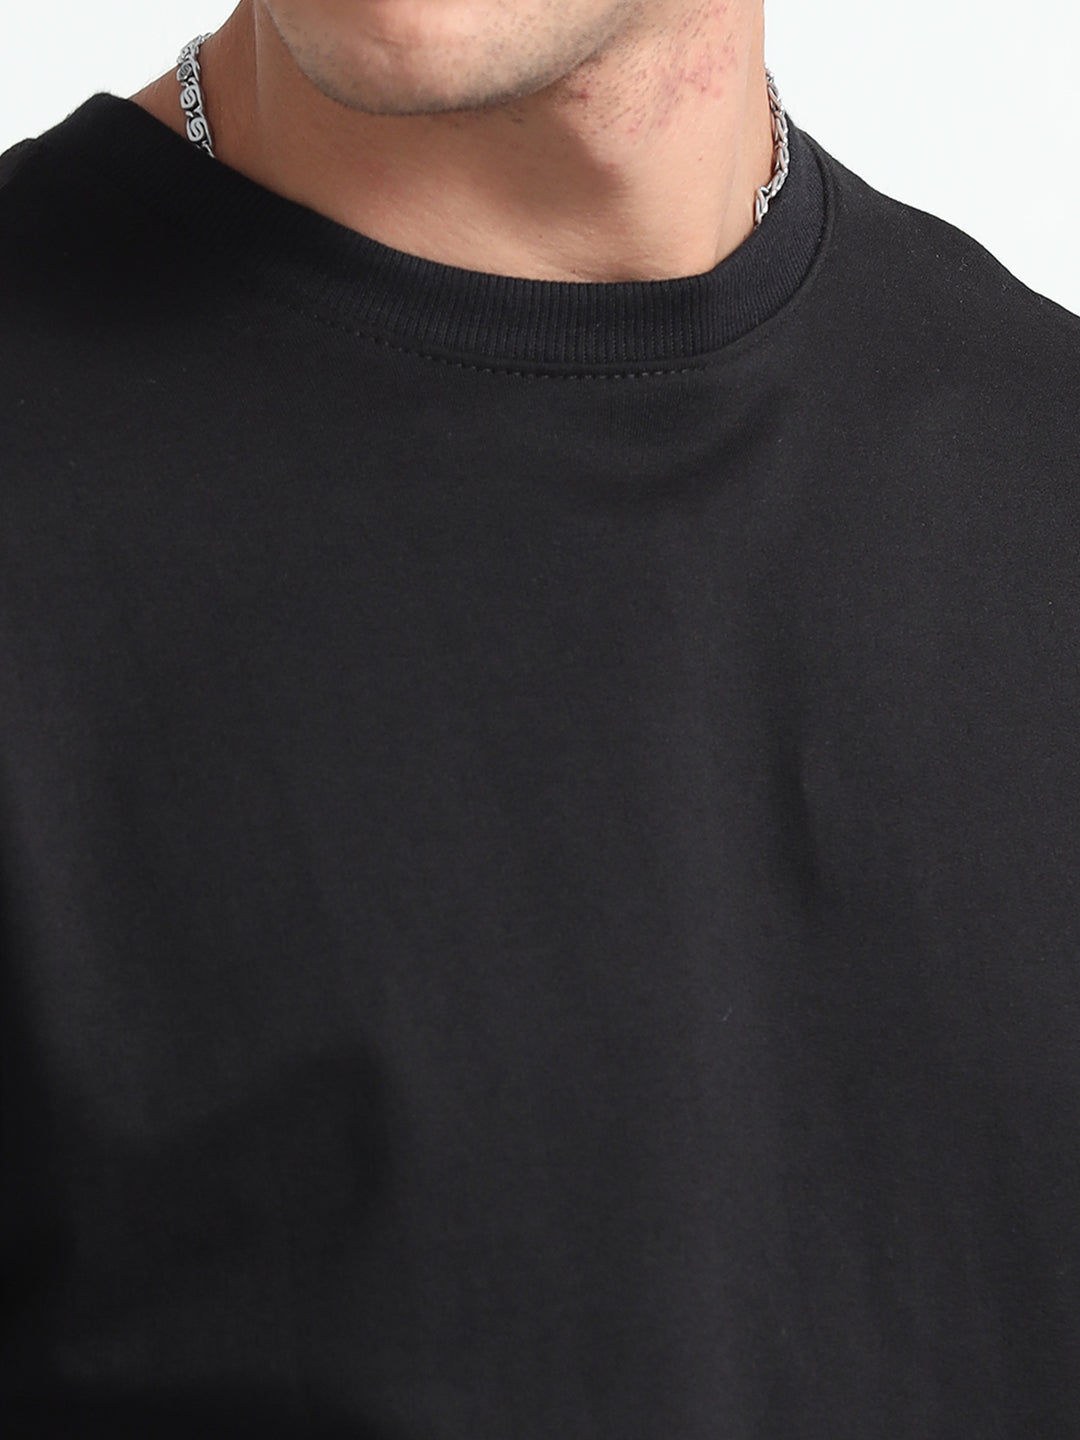 240GSM Unisex Black Cotton Oversized Tshirt